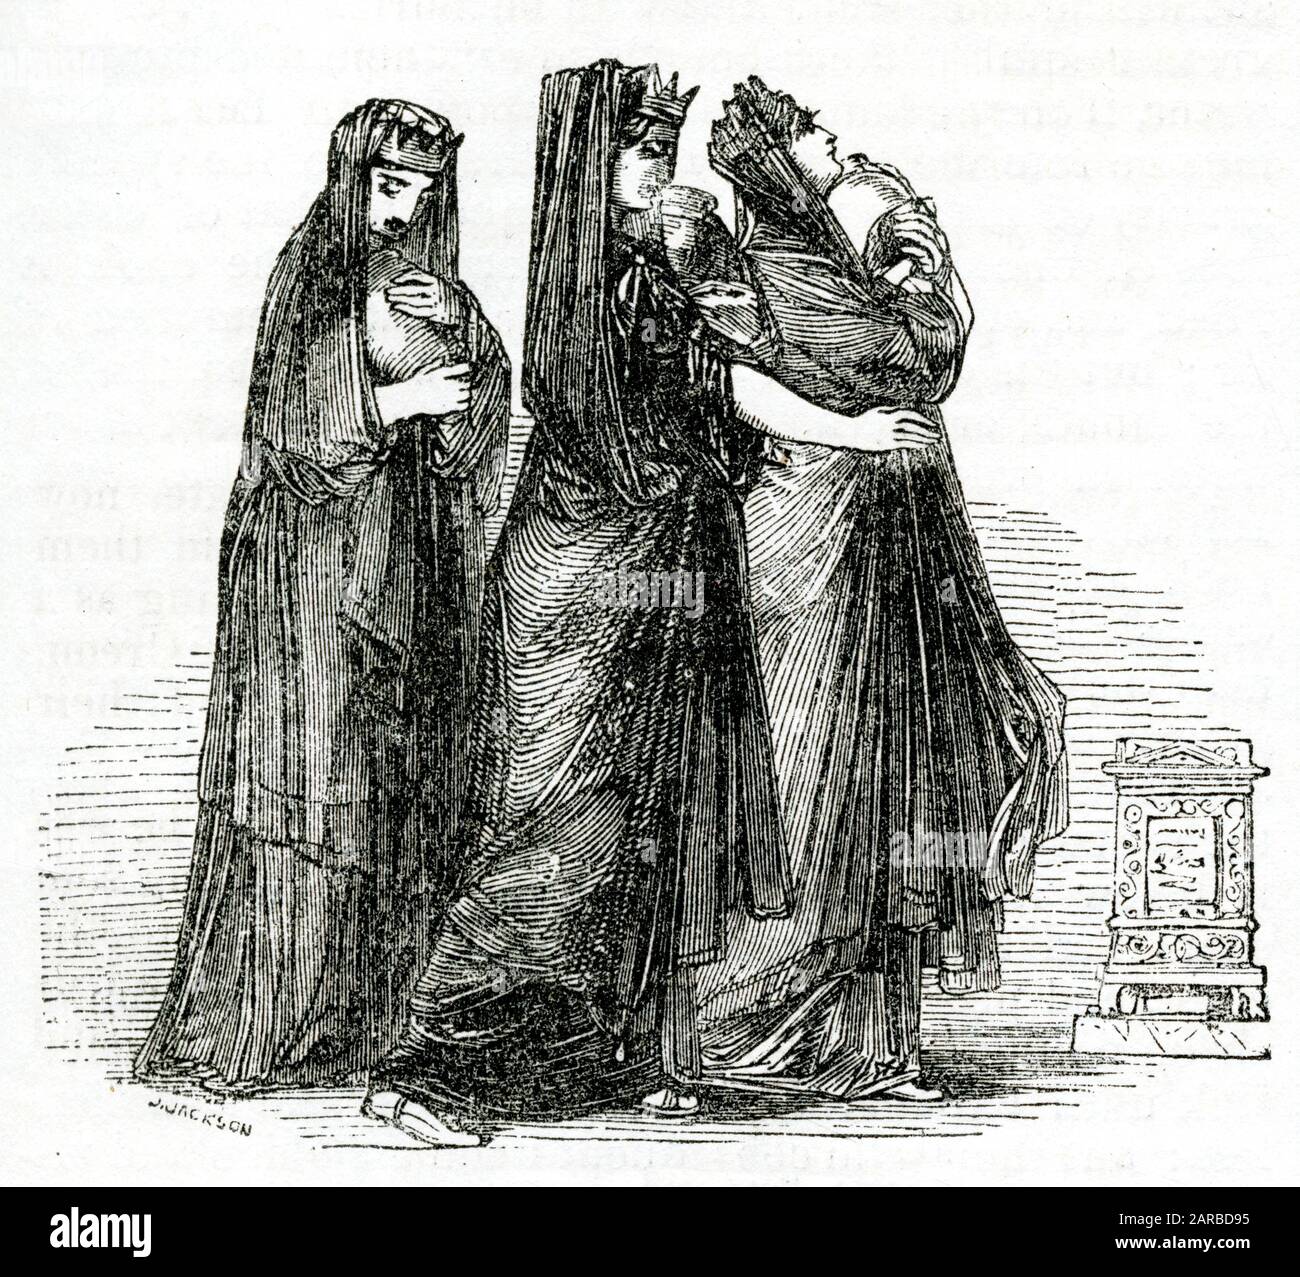 Chaucer, The Canterbury Tales -- Il Racconto Del Cavaliere. Le tre regine vestite di nero, trattenute in Tebe, che implorano il duca Teseo di Atene per il suo aiuto. Stanno portando le ceneri dei loro mariti morti. Data: 1845 Foto Stock